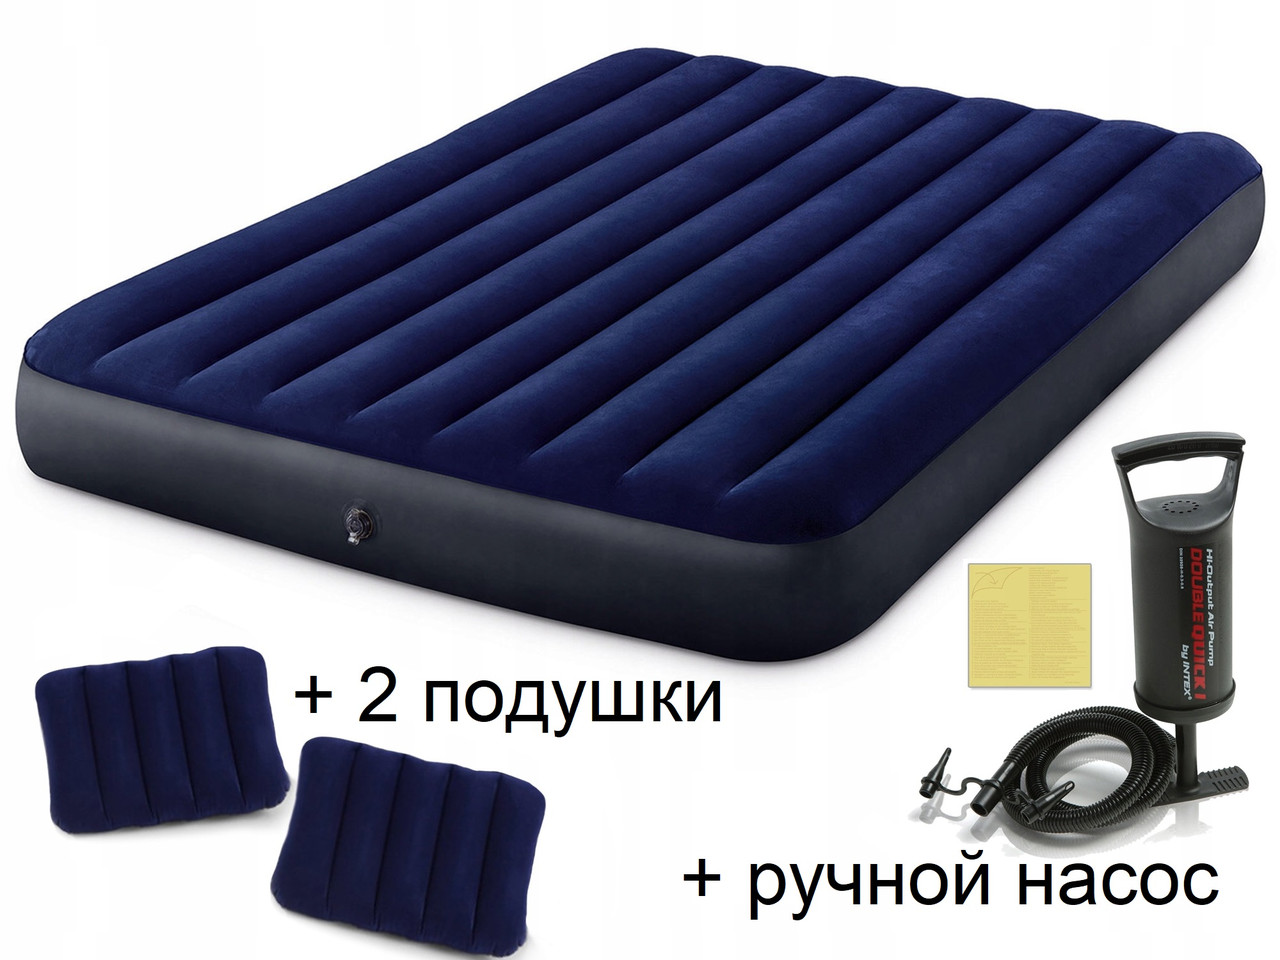 Надувной матрас Intex (усиленный) (64765) 152х203х25 с ручным насосом и подушками, фото 1